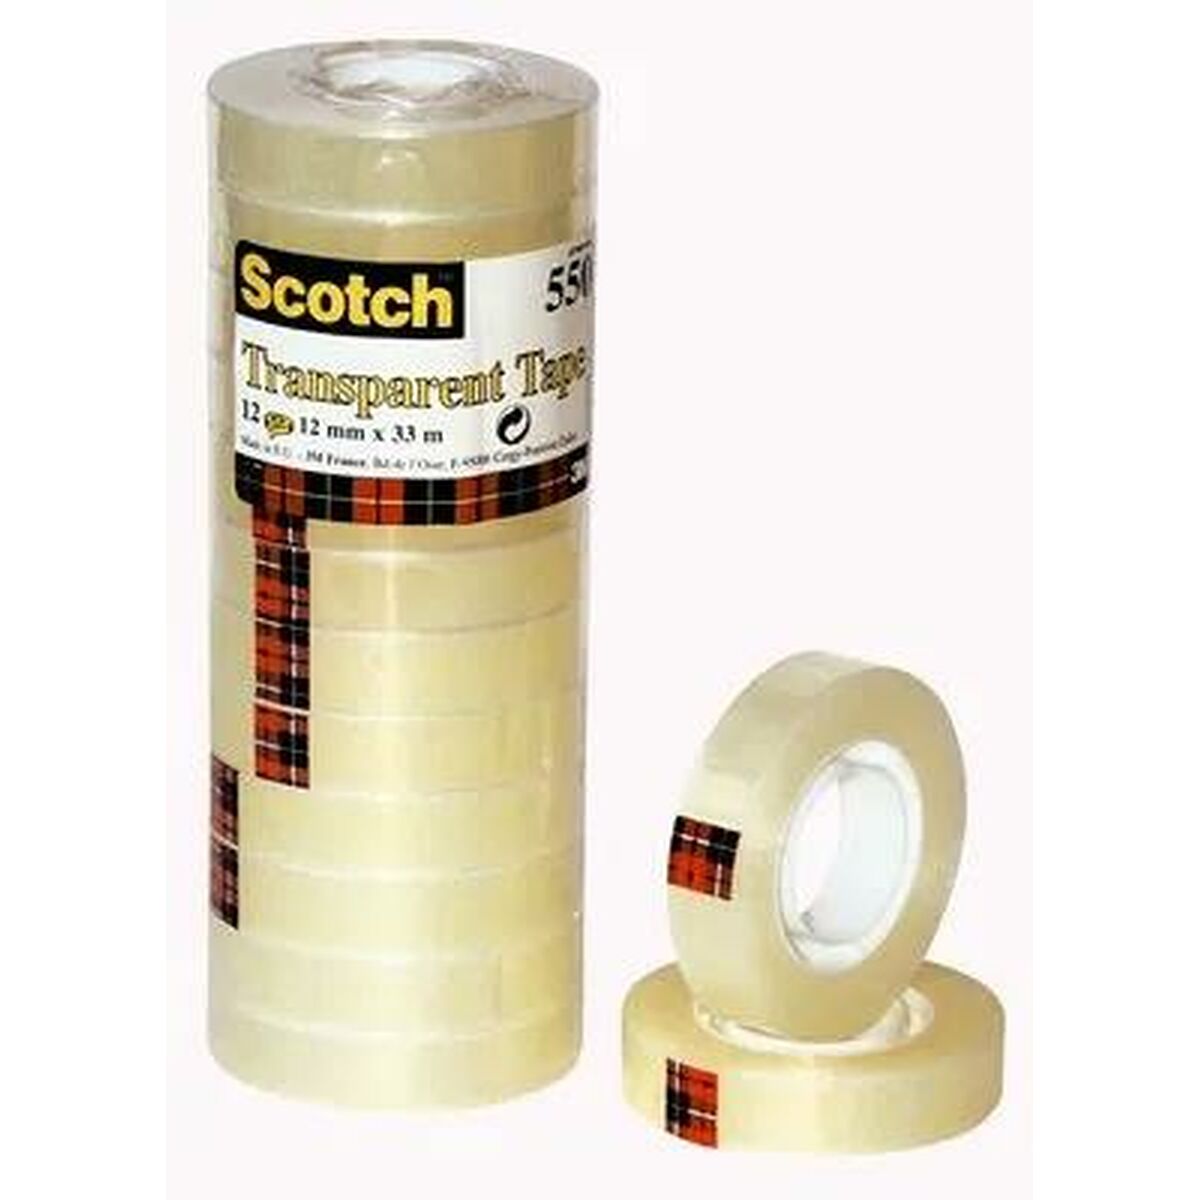 Review – Scotch Transparent Tape